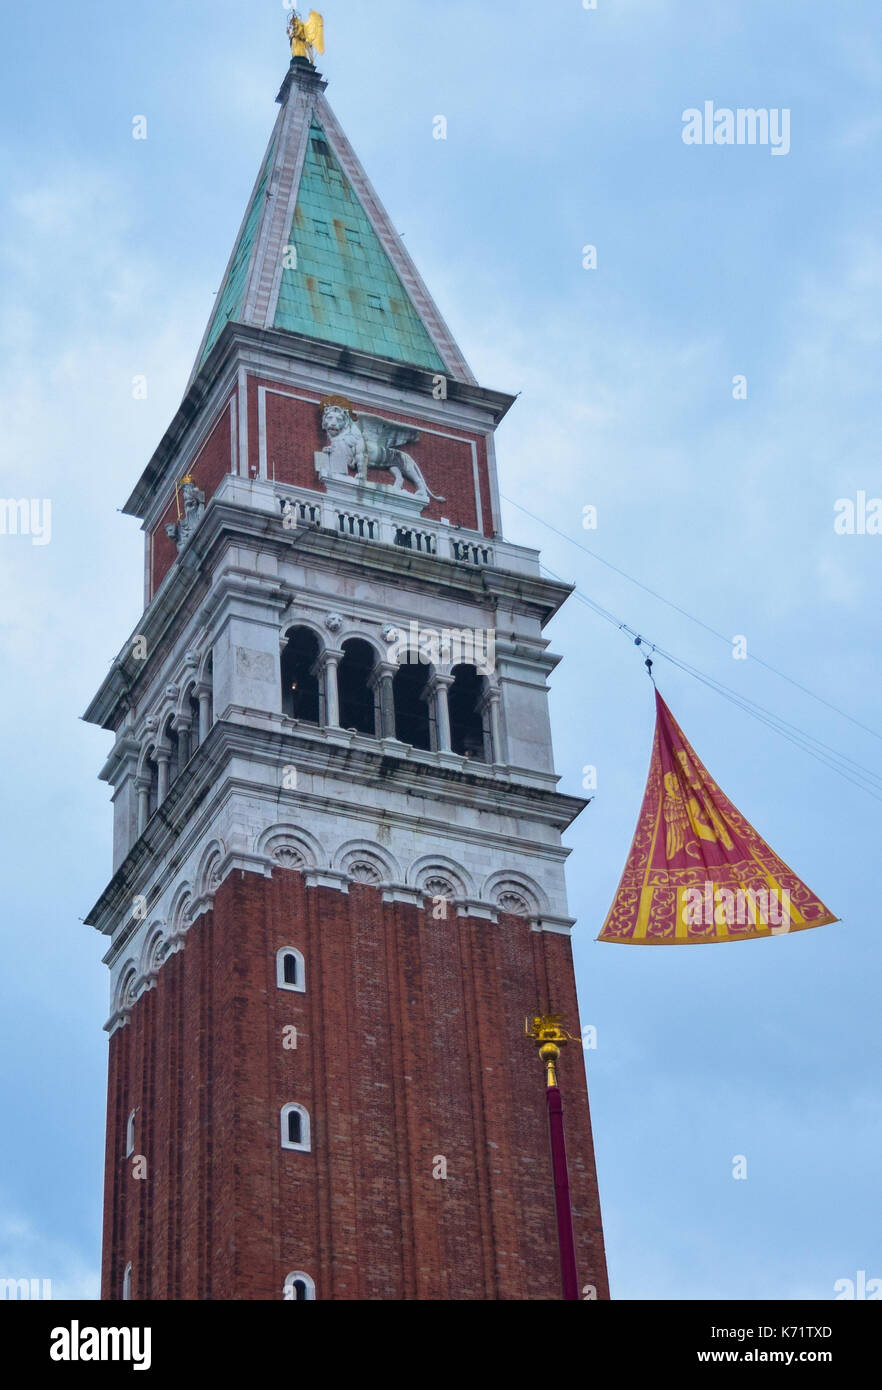 El fin de la tradicional carnaval veneciano, marcada por el aumento de la bandera roja y amarilla veneciano hasta el Campanile di San Marco, Venecia Foto de stock